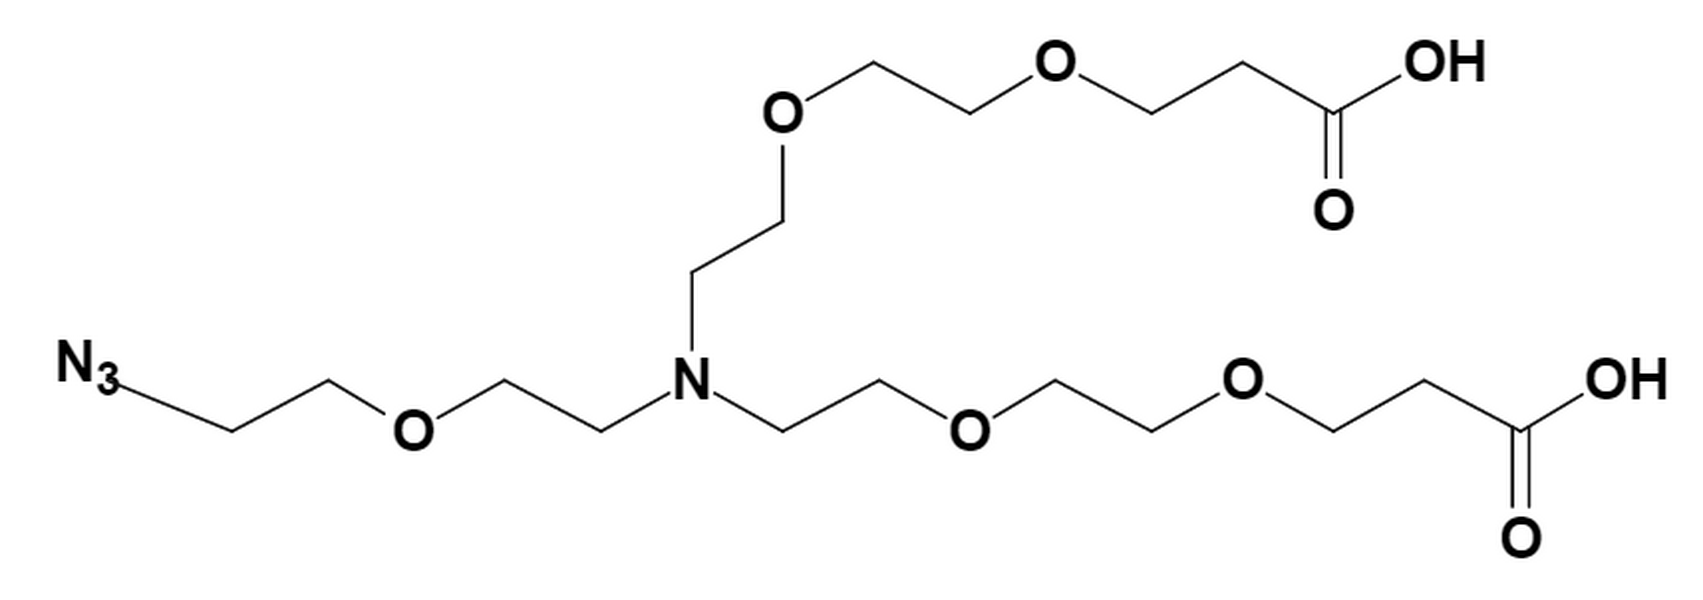 N-(Azido-PEG1)-N-bis(PEG3-acid) HCl salt